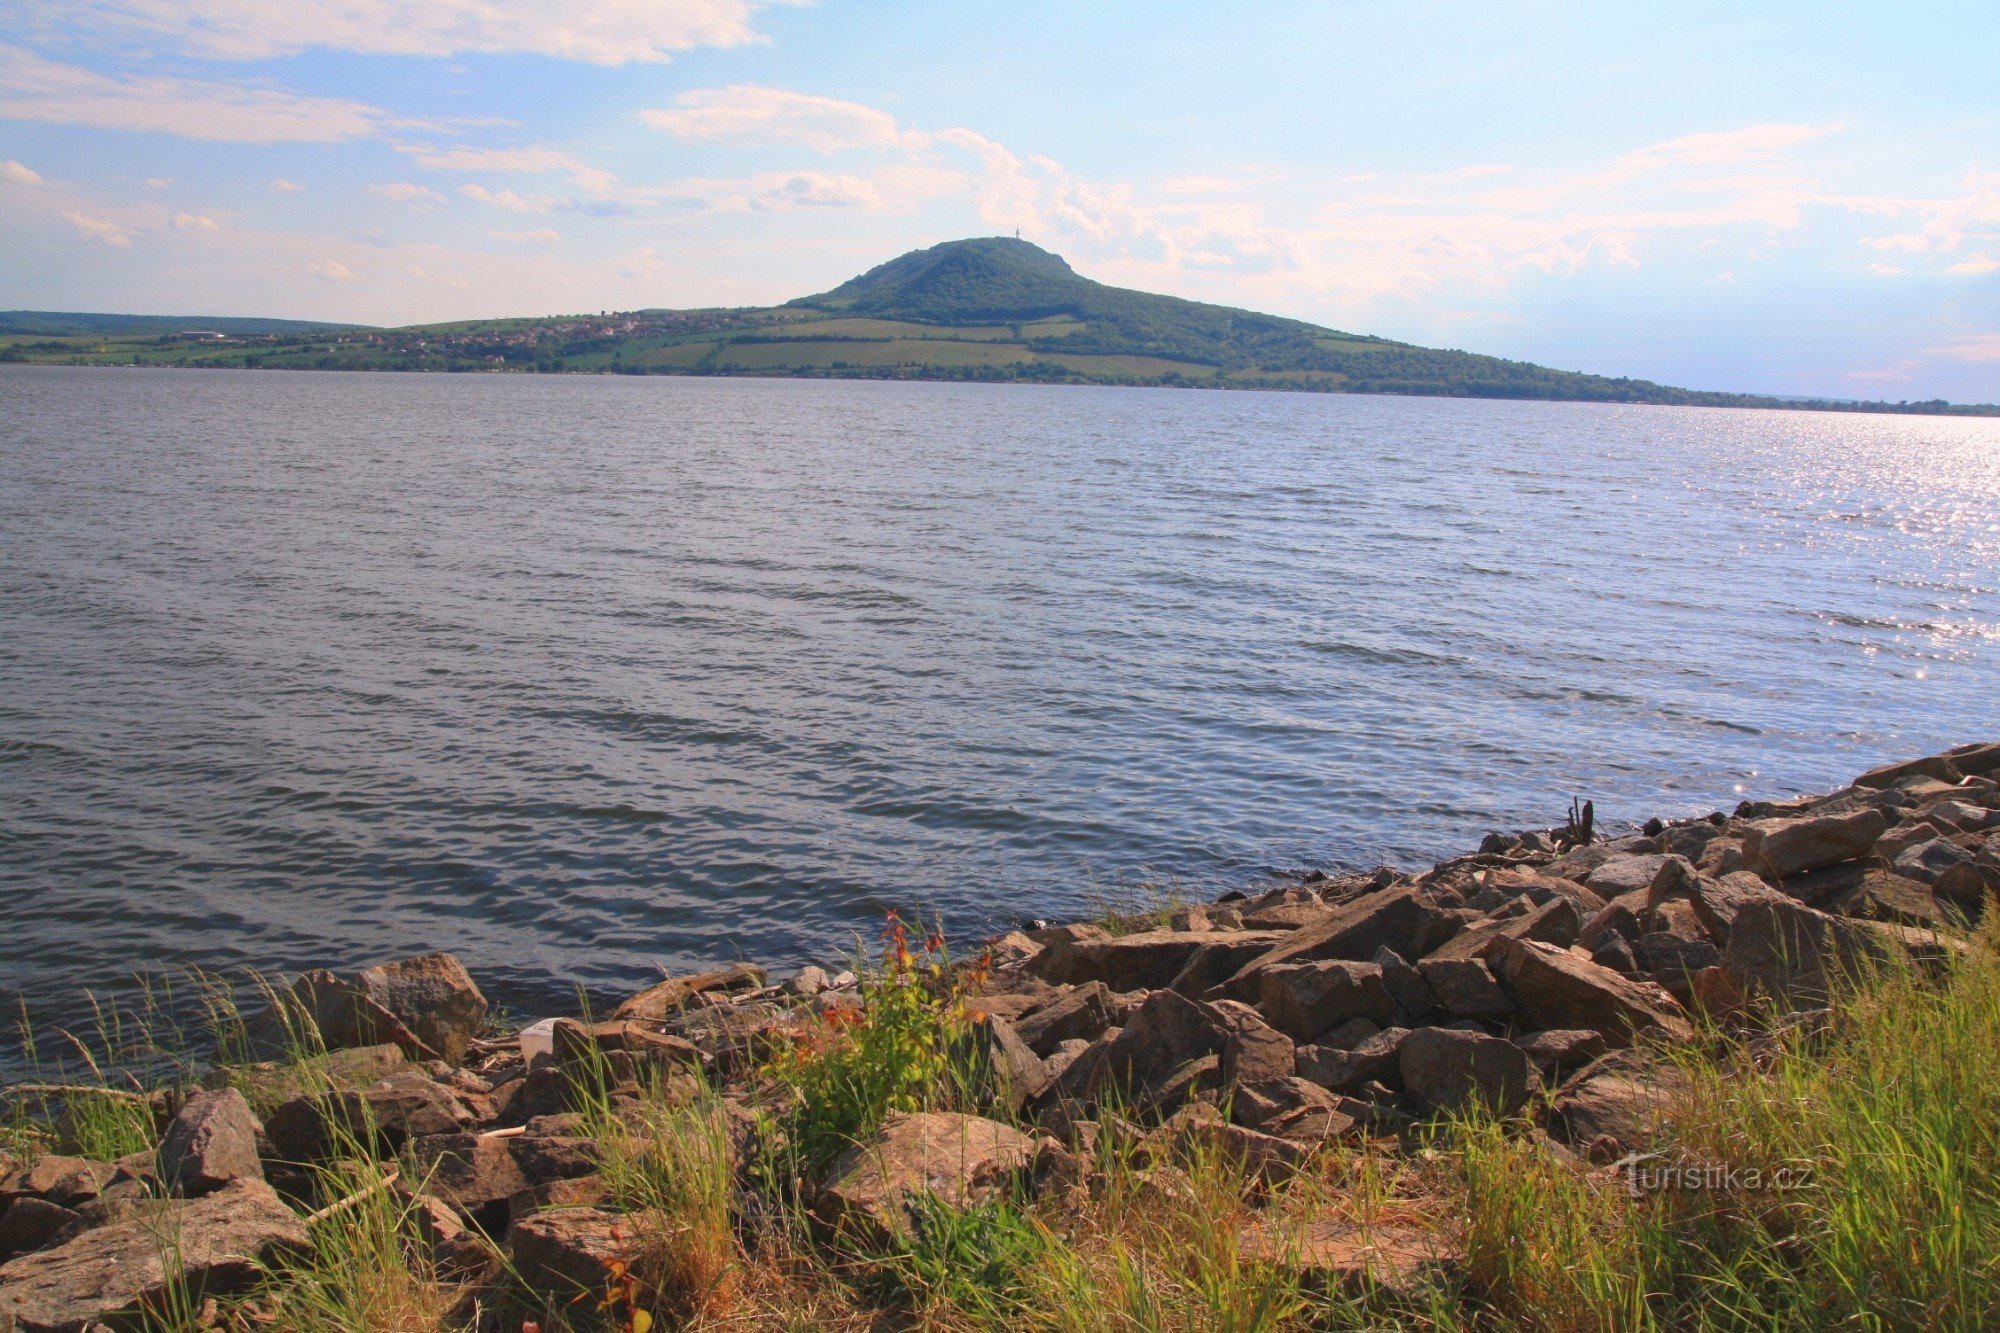 Sulla diga si apre una vista della vasta superficie del bacino di Novomlýnská con la cresta del Pálava